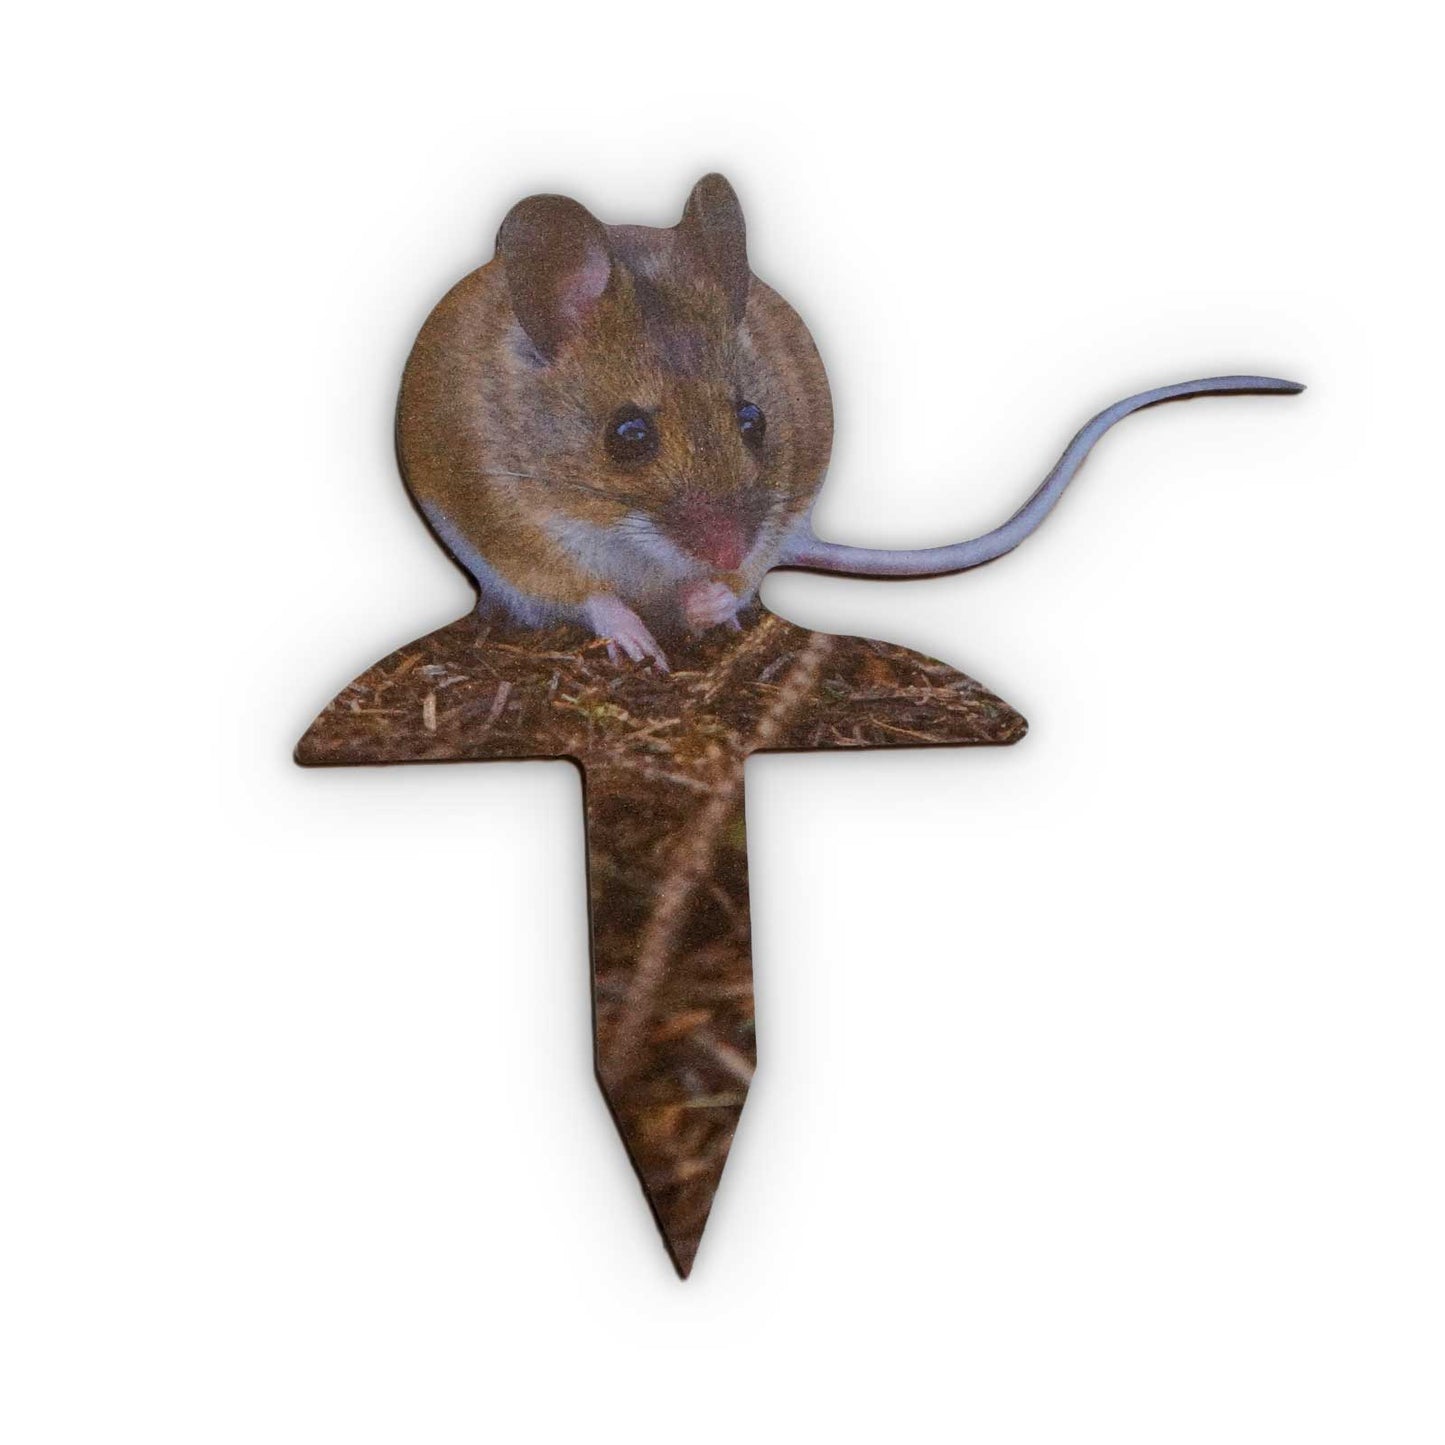 Animal display wood mouse skewer